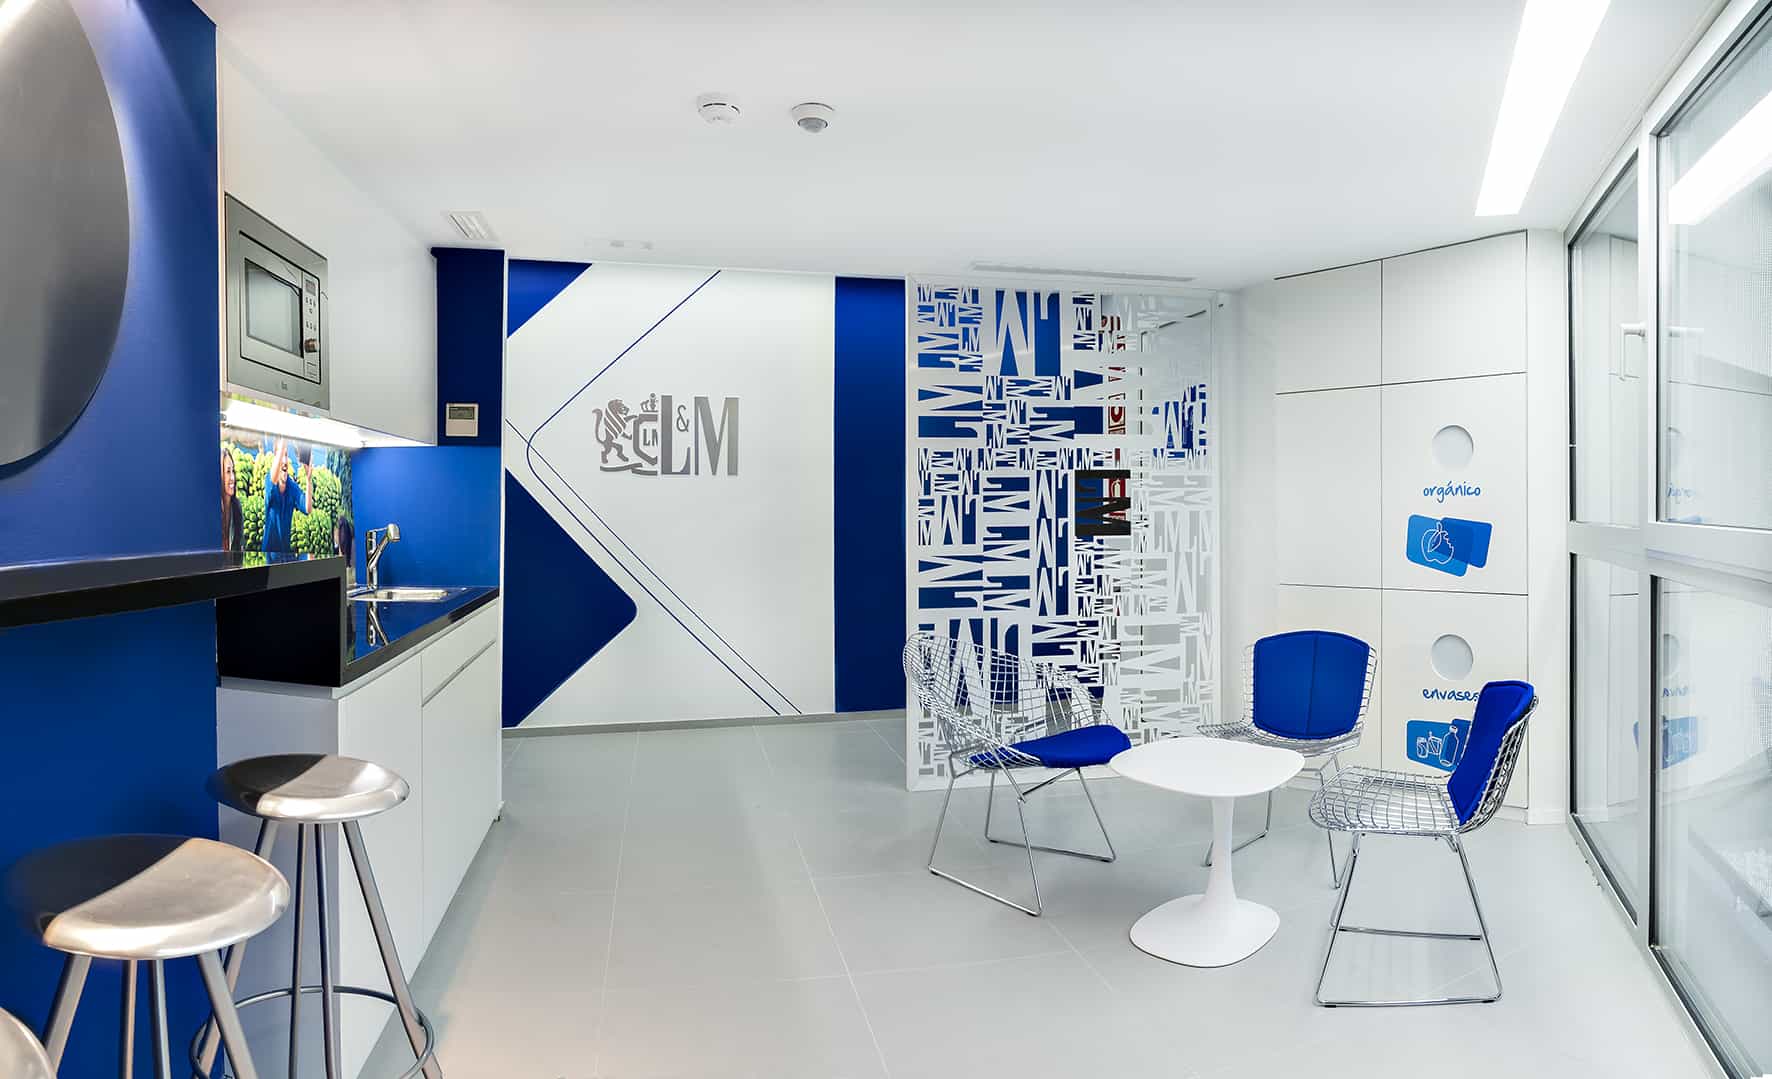 Philip Morris_Galeria_despacho individual de color azul con mesa y silla en espacio corporativo